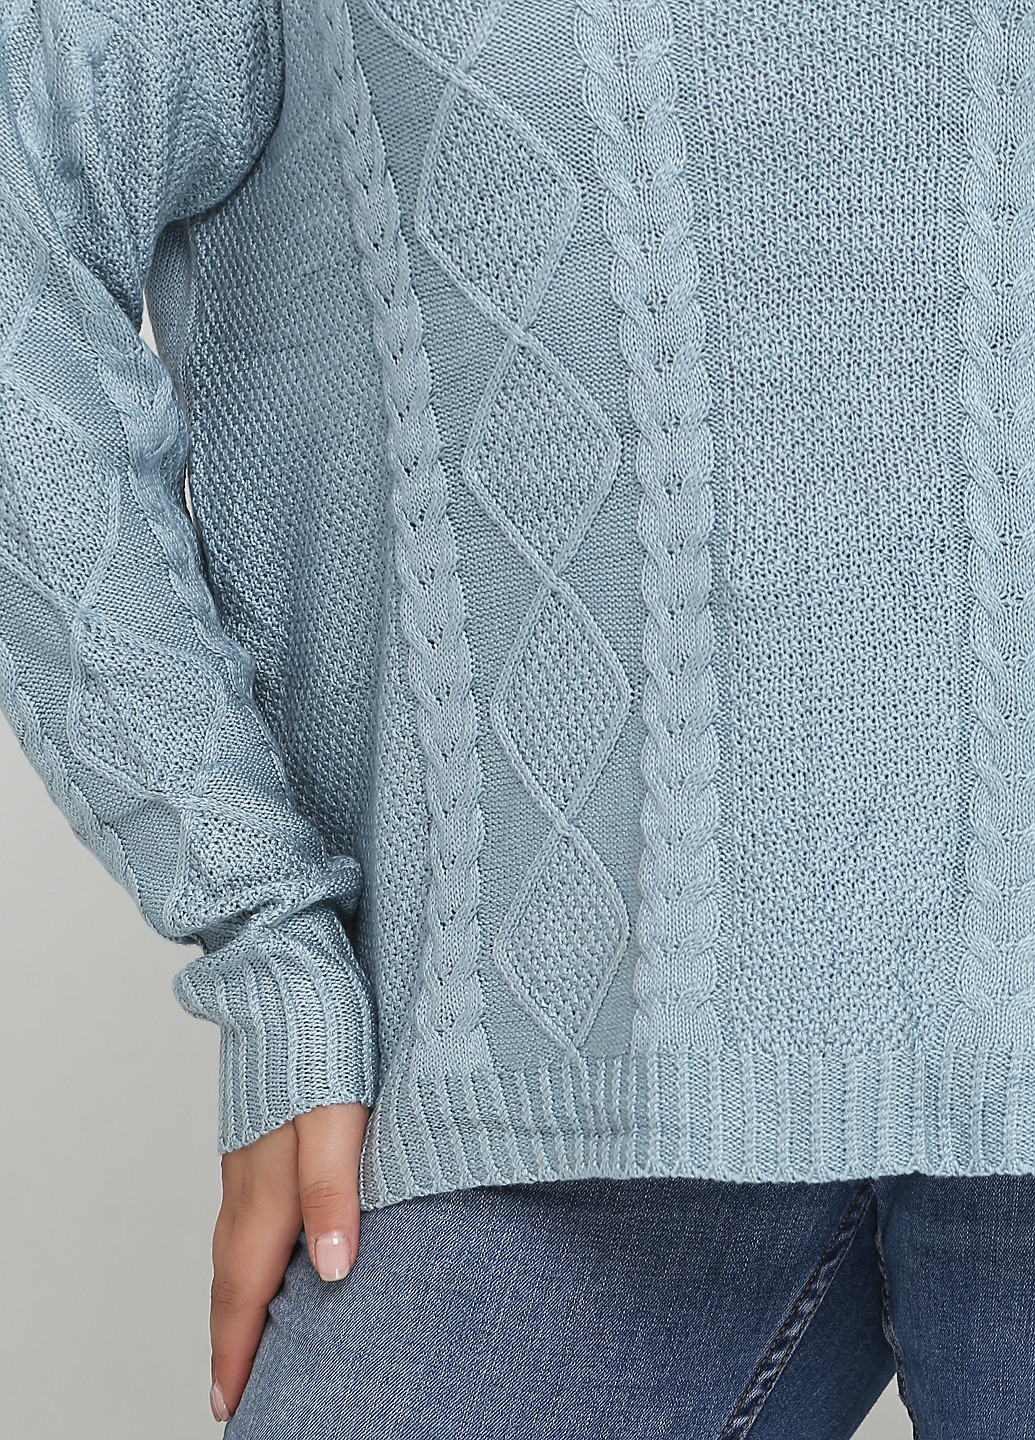 Блакитний демісезонний пуловер пуловер CHD